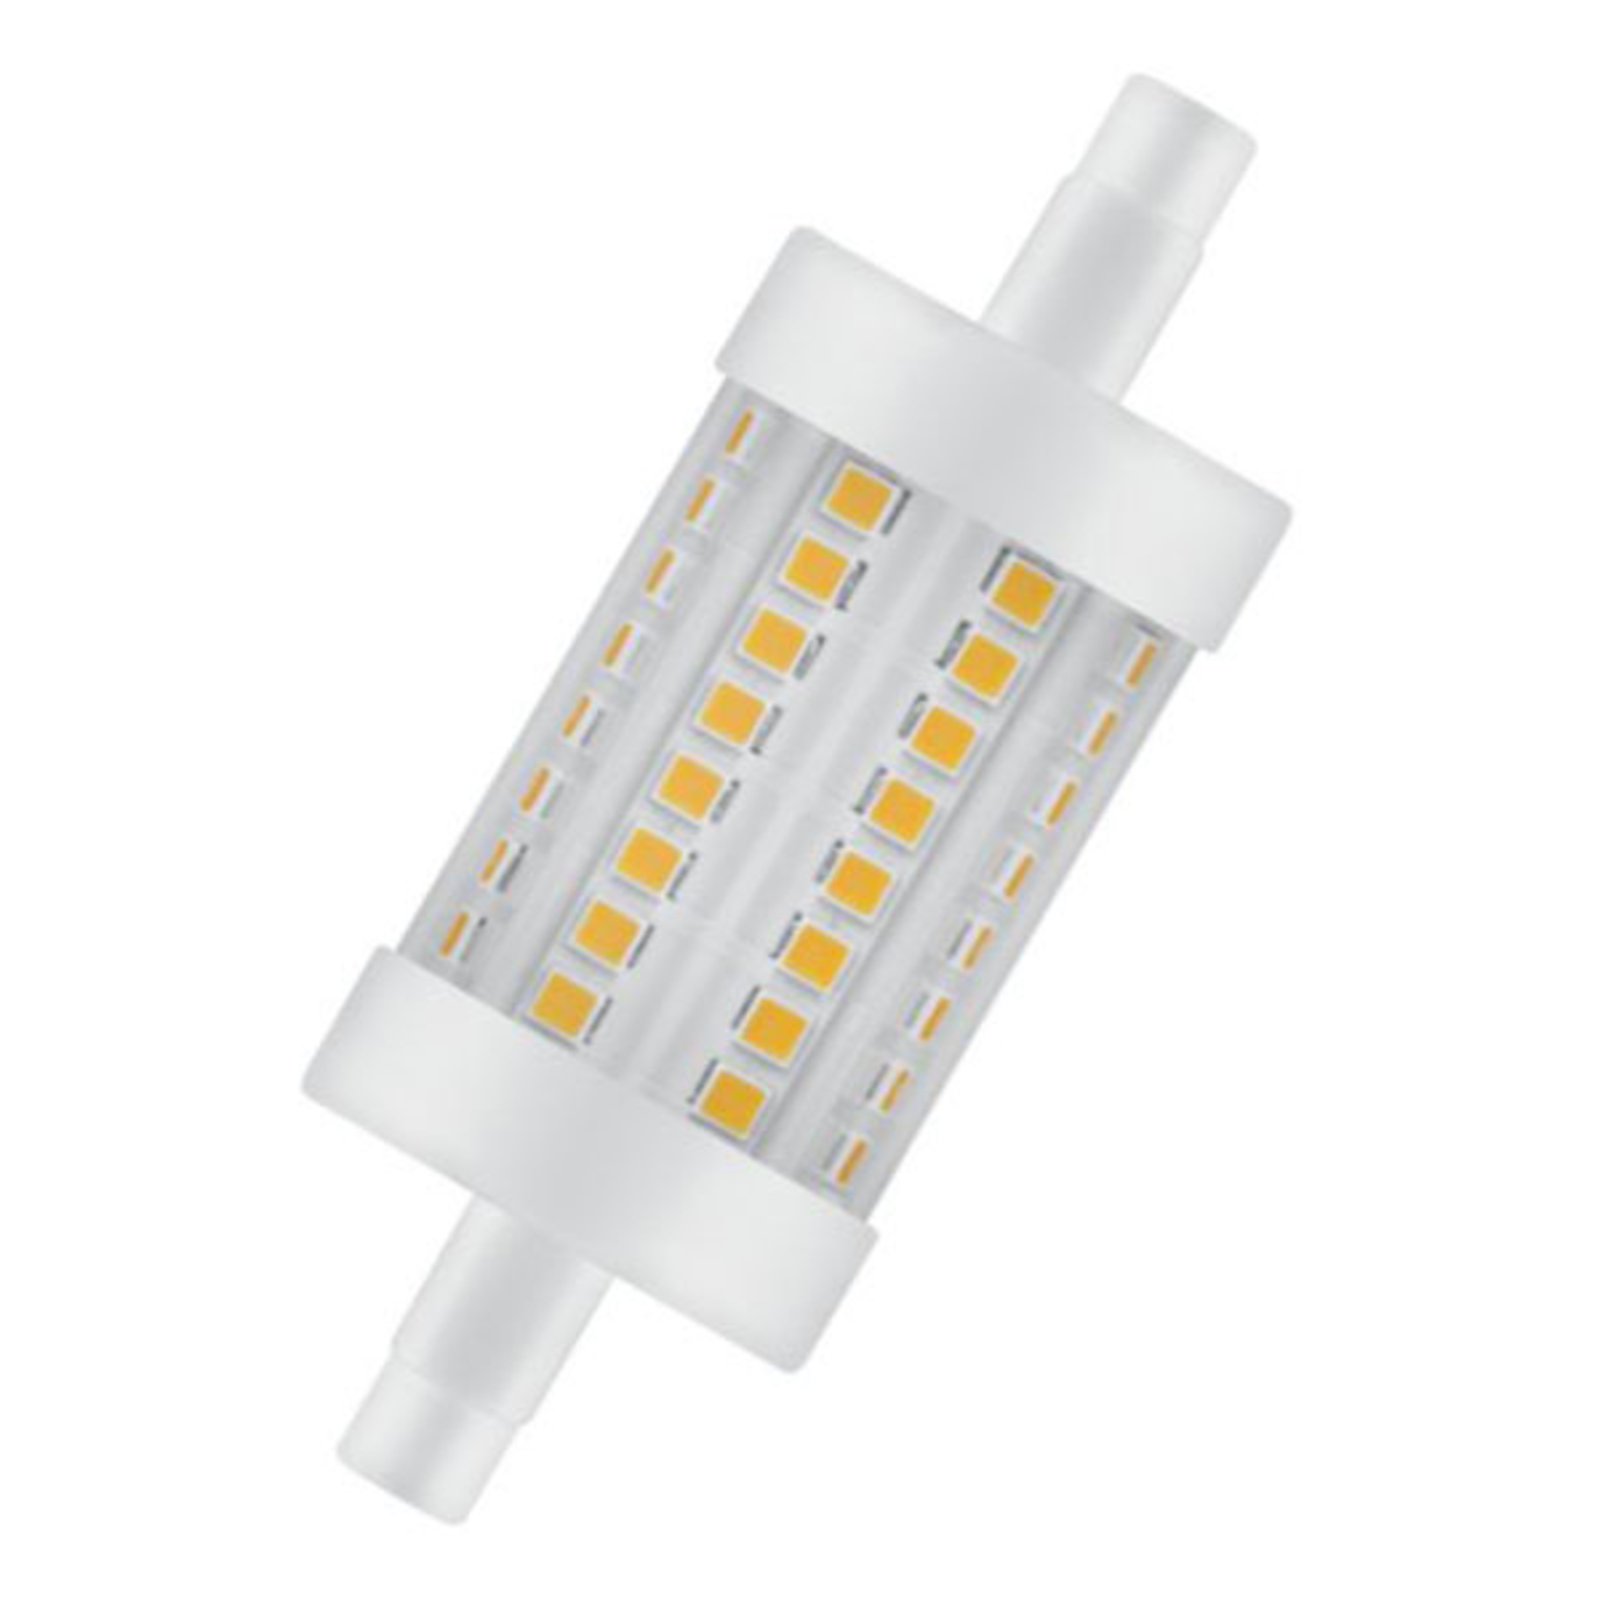 OSRAM ampoule LED R7s 6,5 W 2 700 K